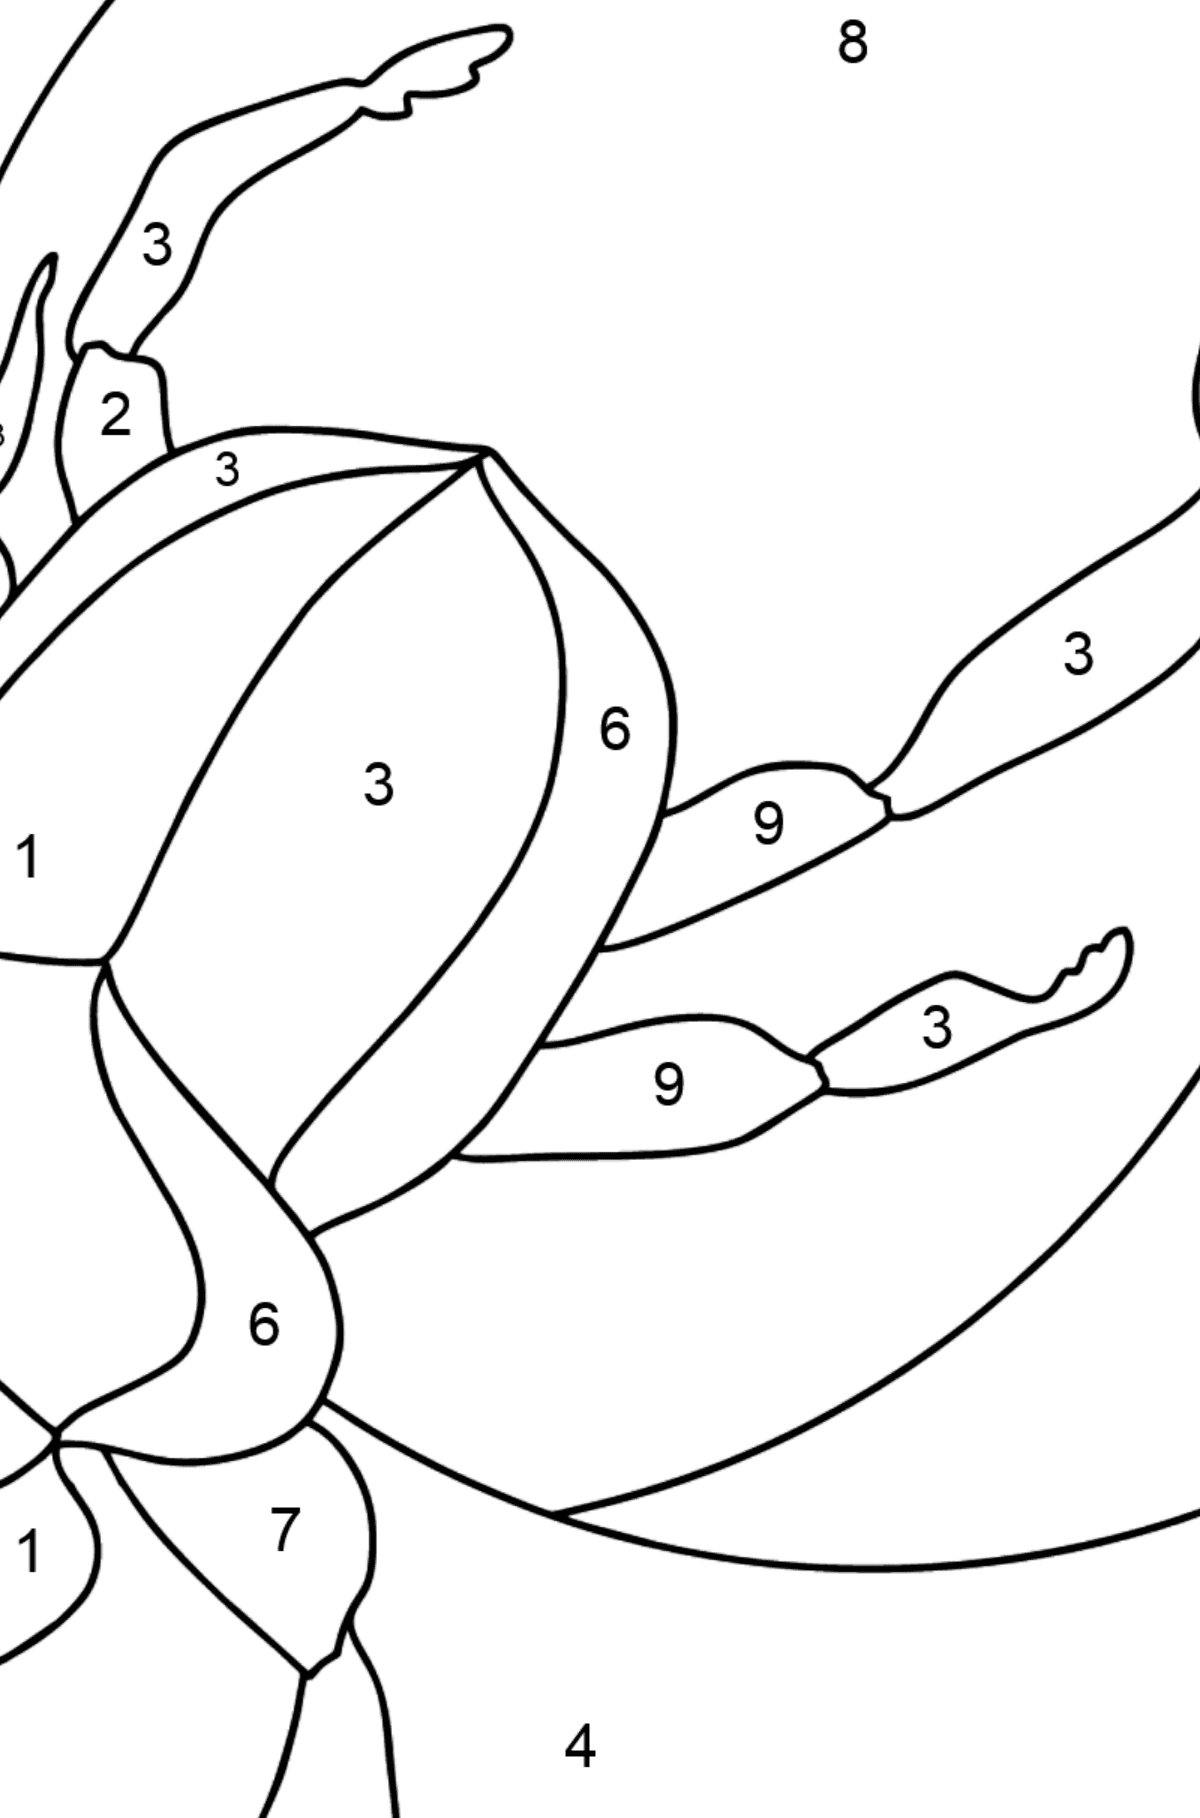 Ausmalbild - Ein Skarabäus-Käfer oder ein Symbol der Erneuerung - Malen nach Zahlen für Kinder